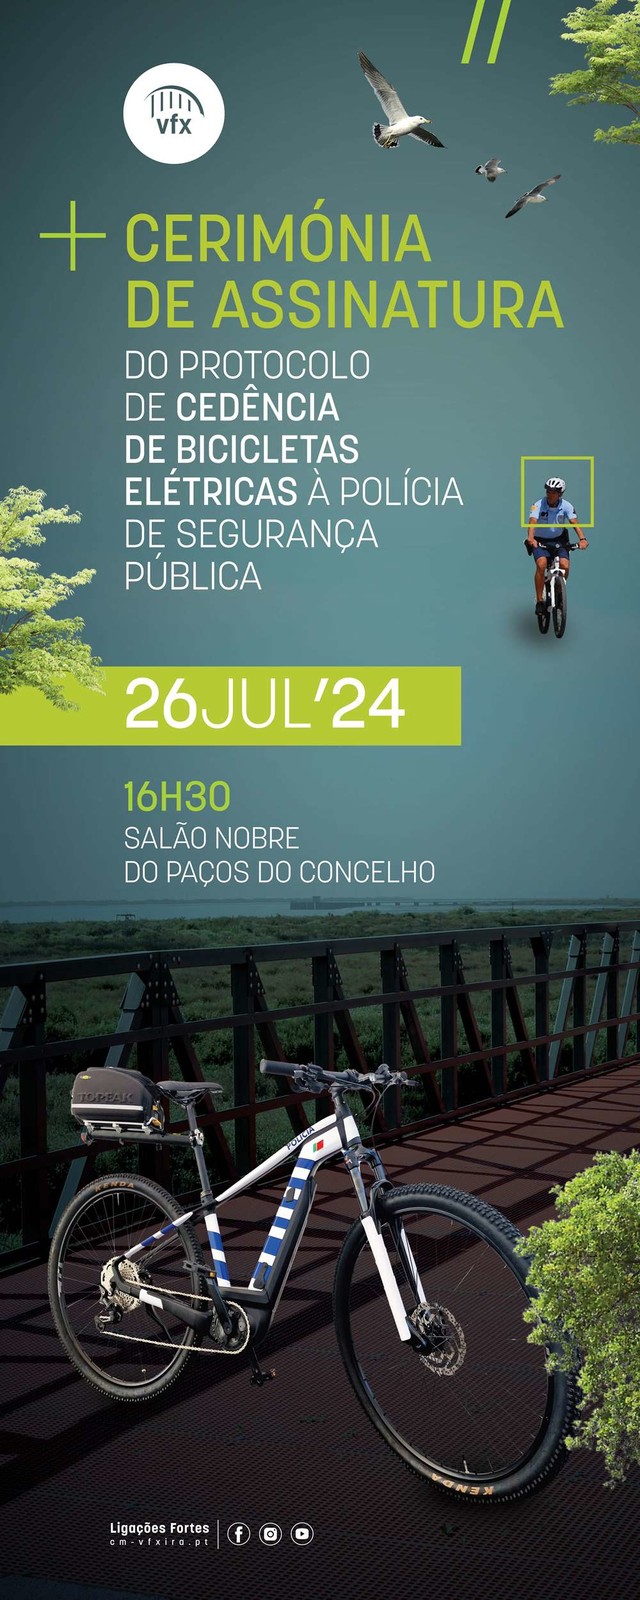 CM Vila Franca de Xira assina protocolo de cedência de Bicicletas elétricas à Polícia de Seguranç...